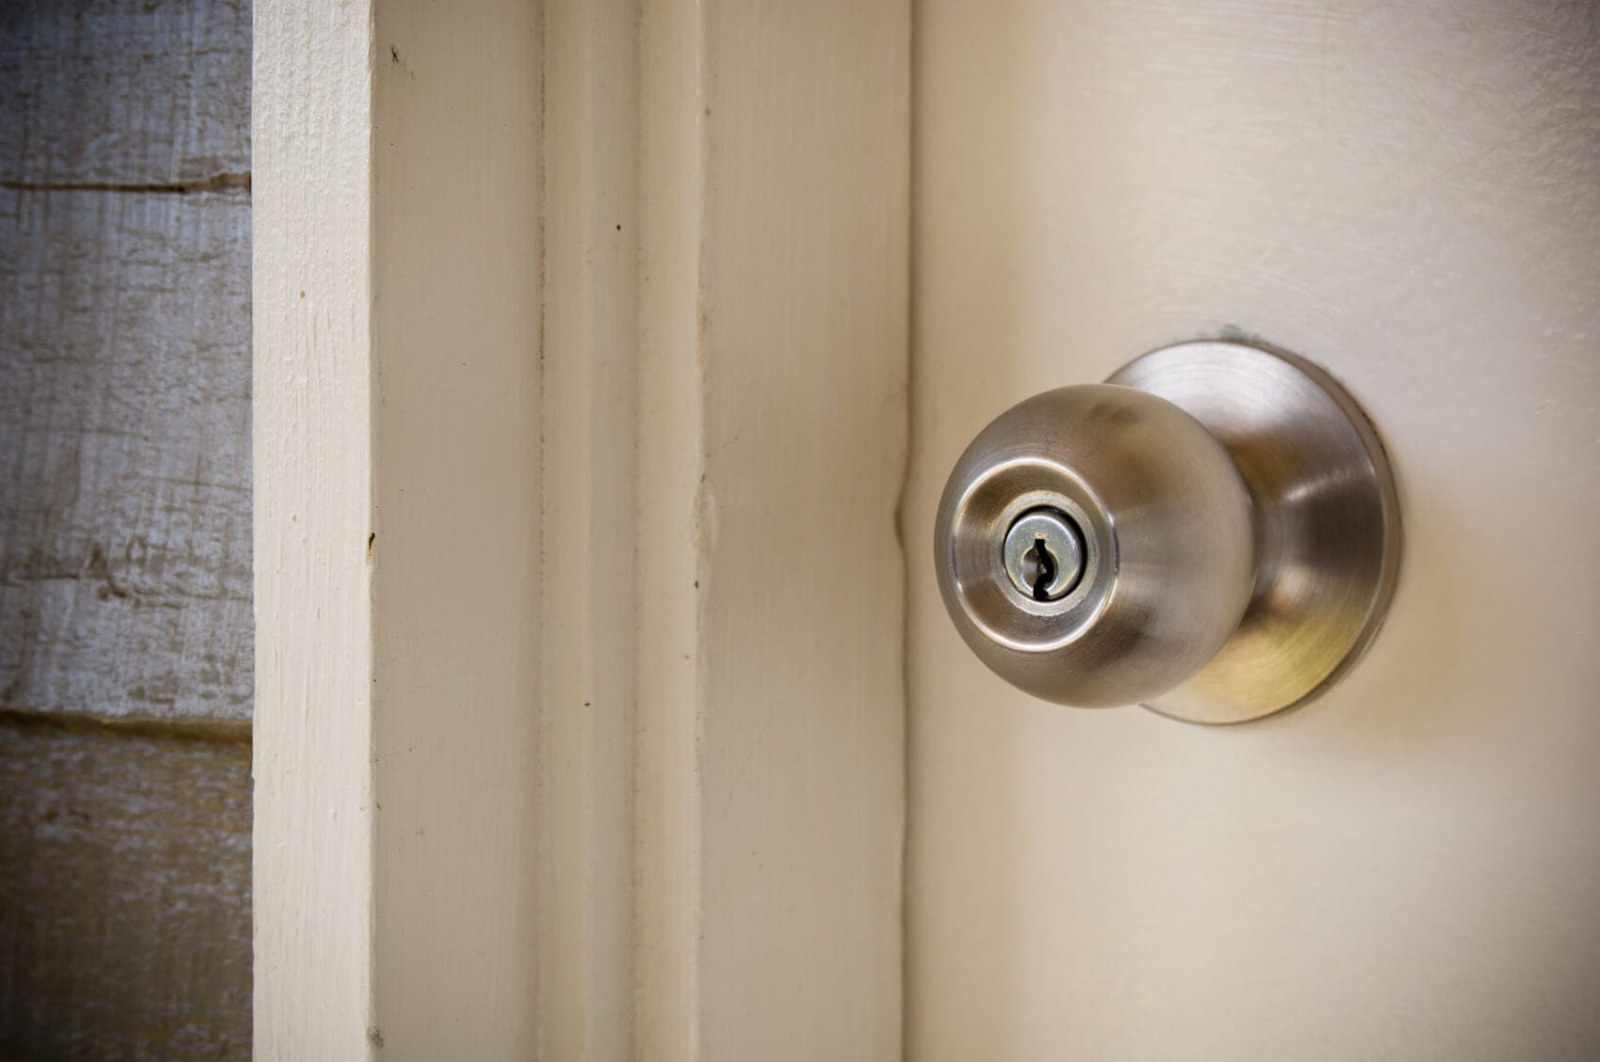 Với khóa cửa tay nắm tròn được thiết kế độc đáo và tiện dụng, ngôi nhà của bạn sẽ trở nên tối ưu hơn bao giờ hết. Hình ảnh liên quan sẽ cho thấy khóa được làm bằng vật liệu chất lượng tốt, vừa đảm bảo an toàn vừa tăng tính thẩm mỹ cho không gian sống.